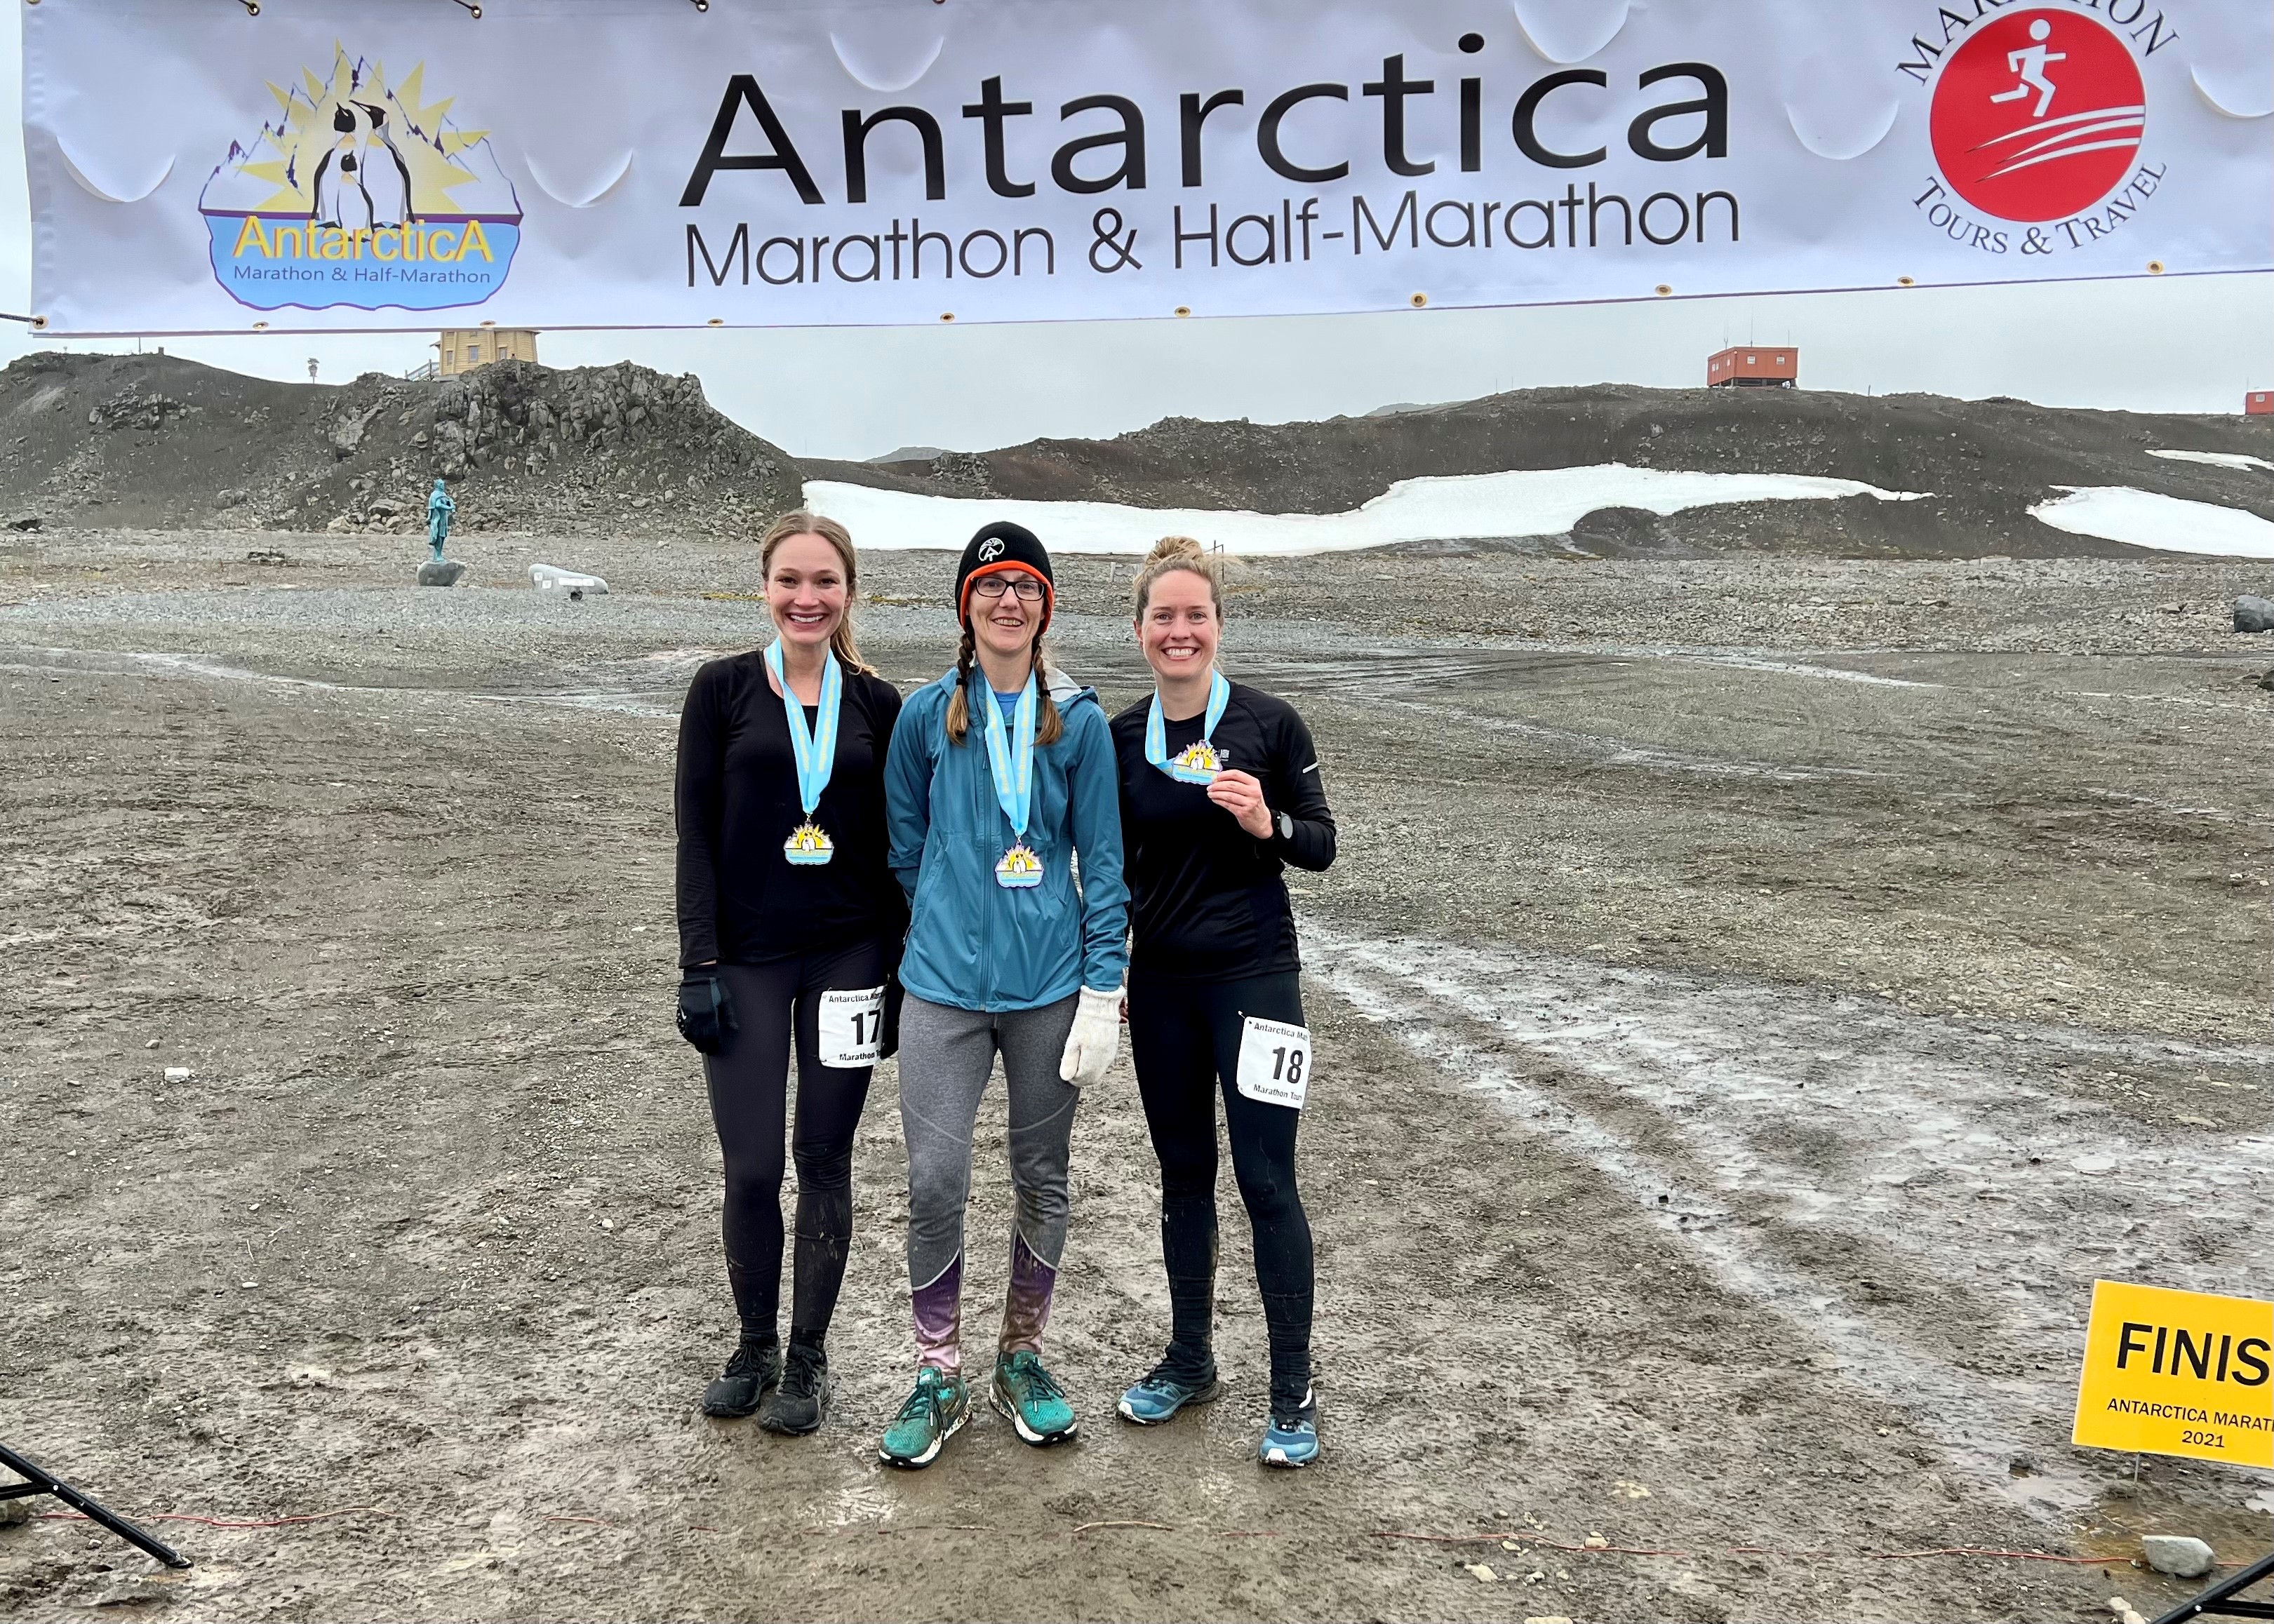 2022 Antarctica Marathon Results - Voyage 2